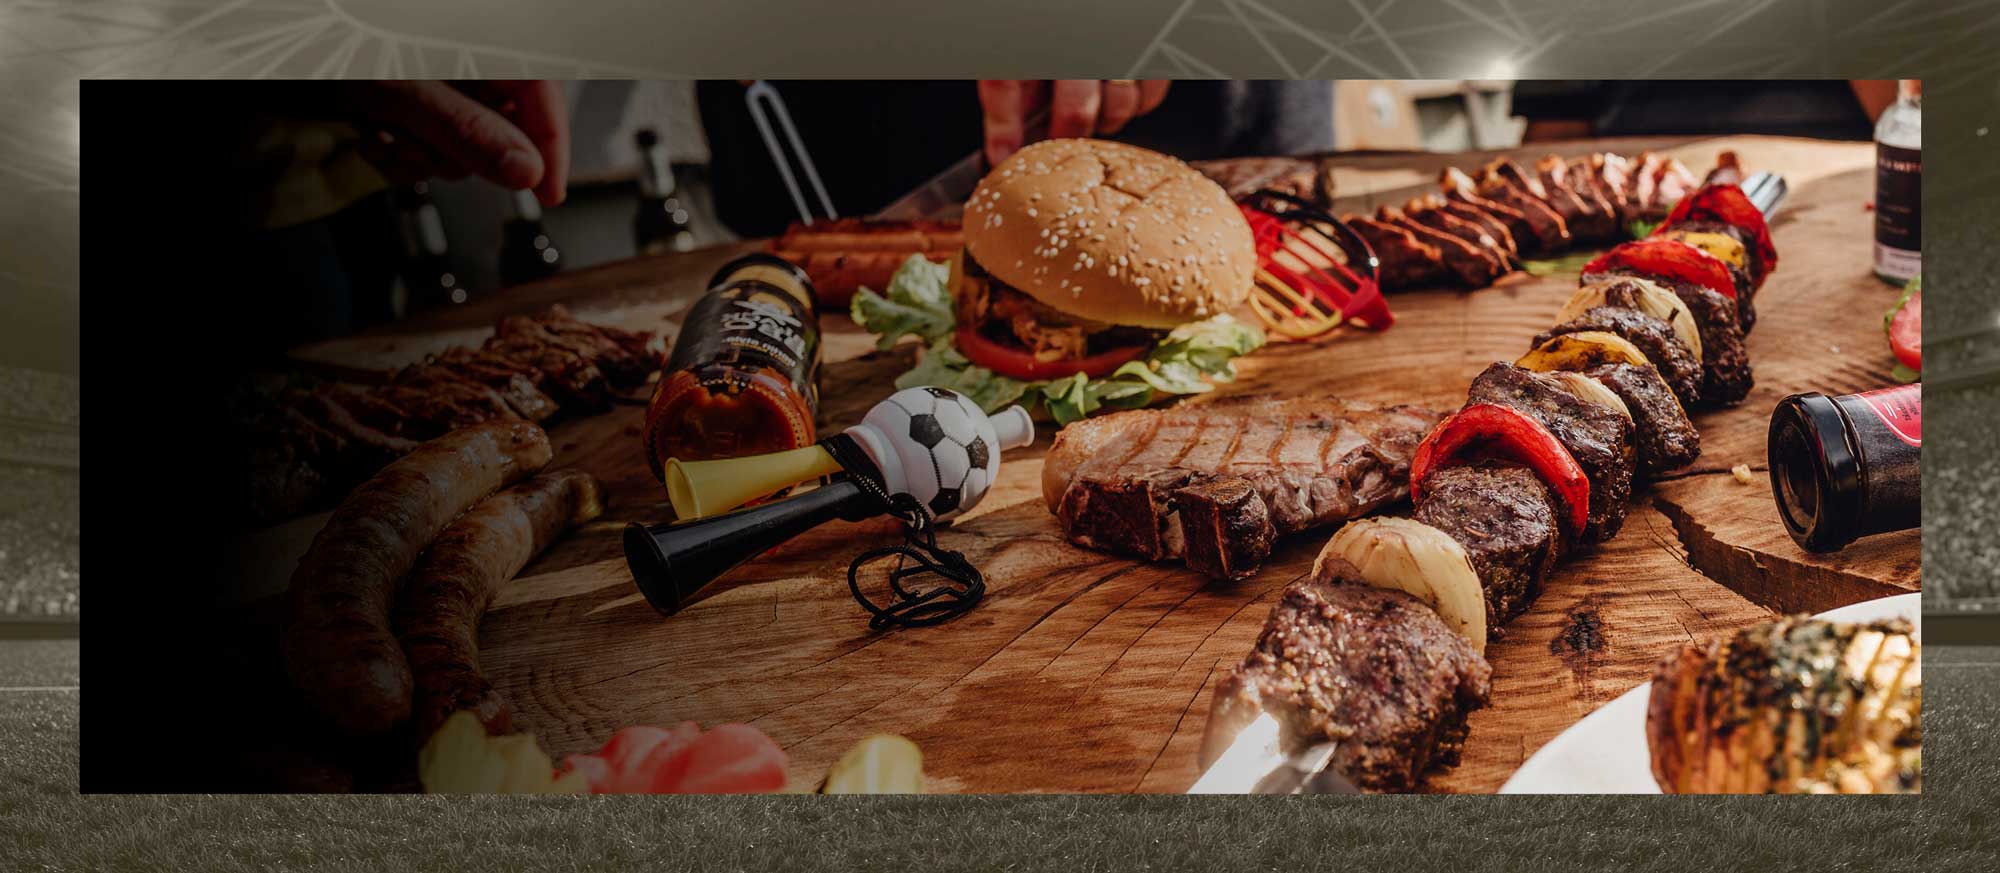 Gegrilltes Fleisch, Burger und Fußballdeko auf einem Tisch.